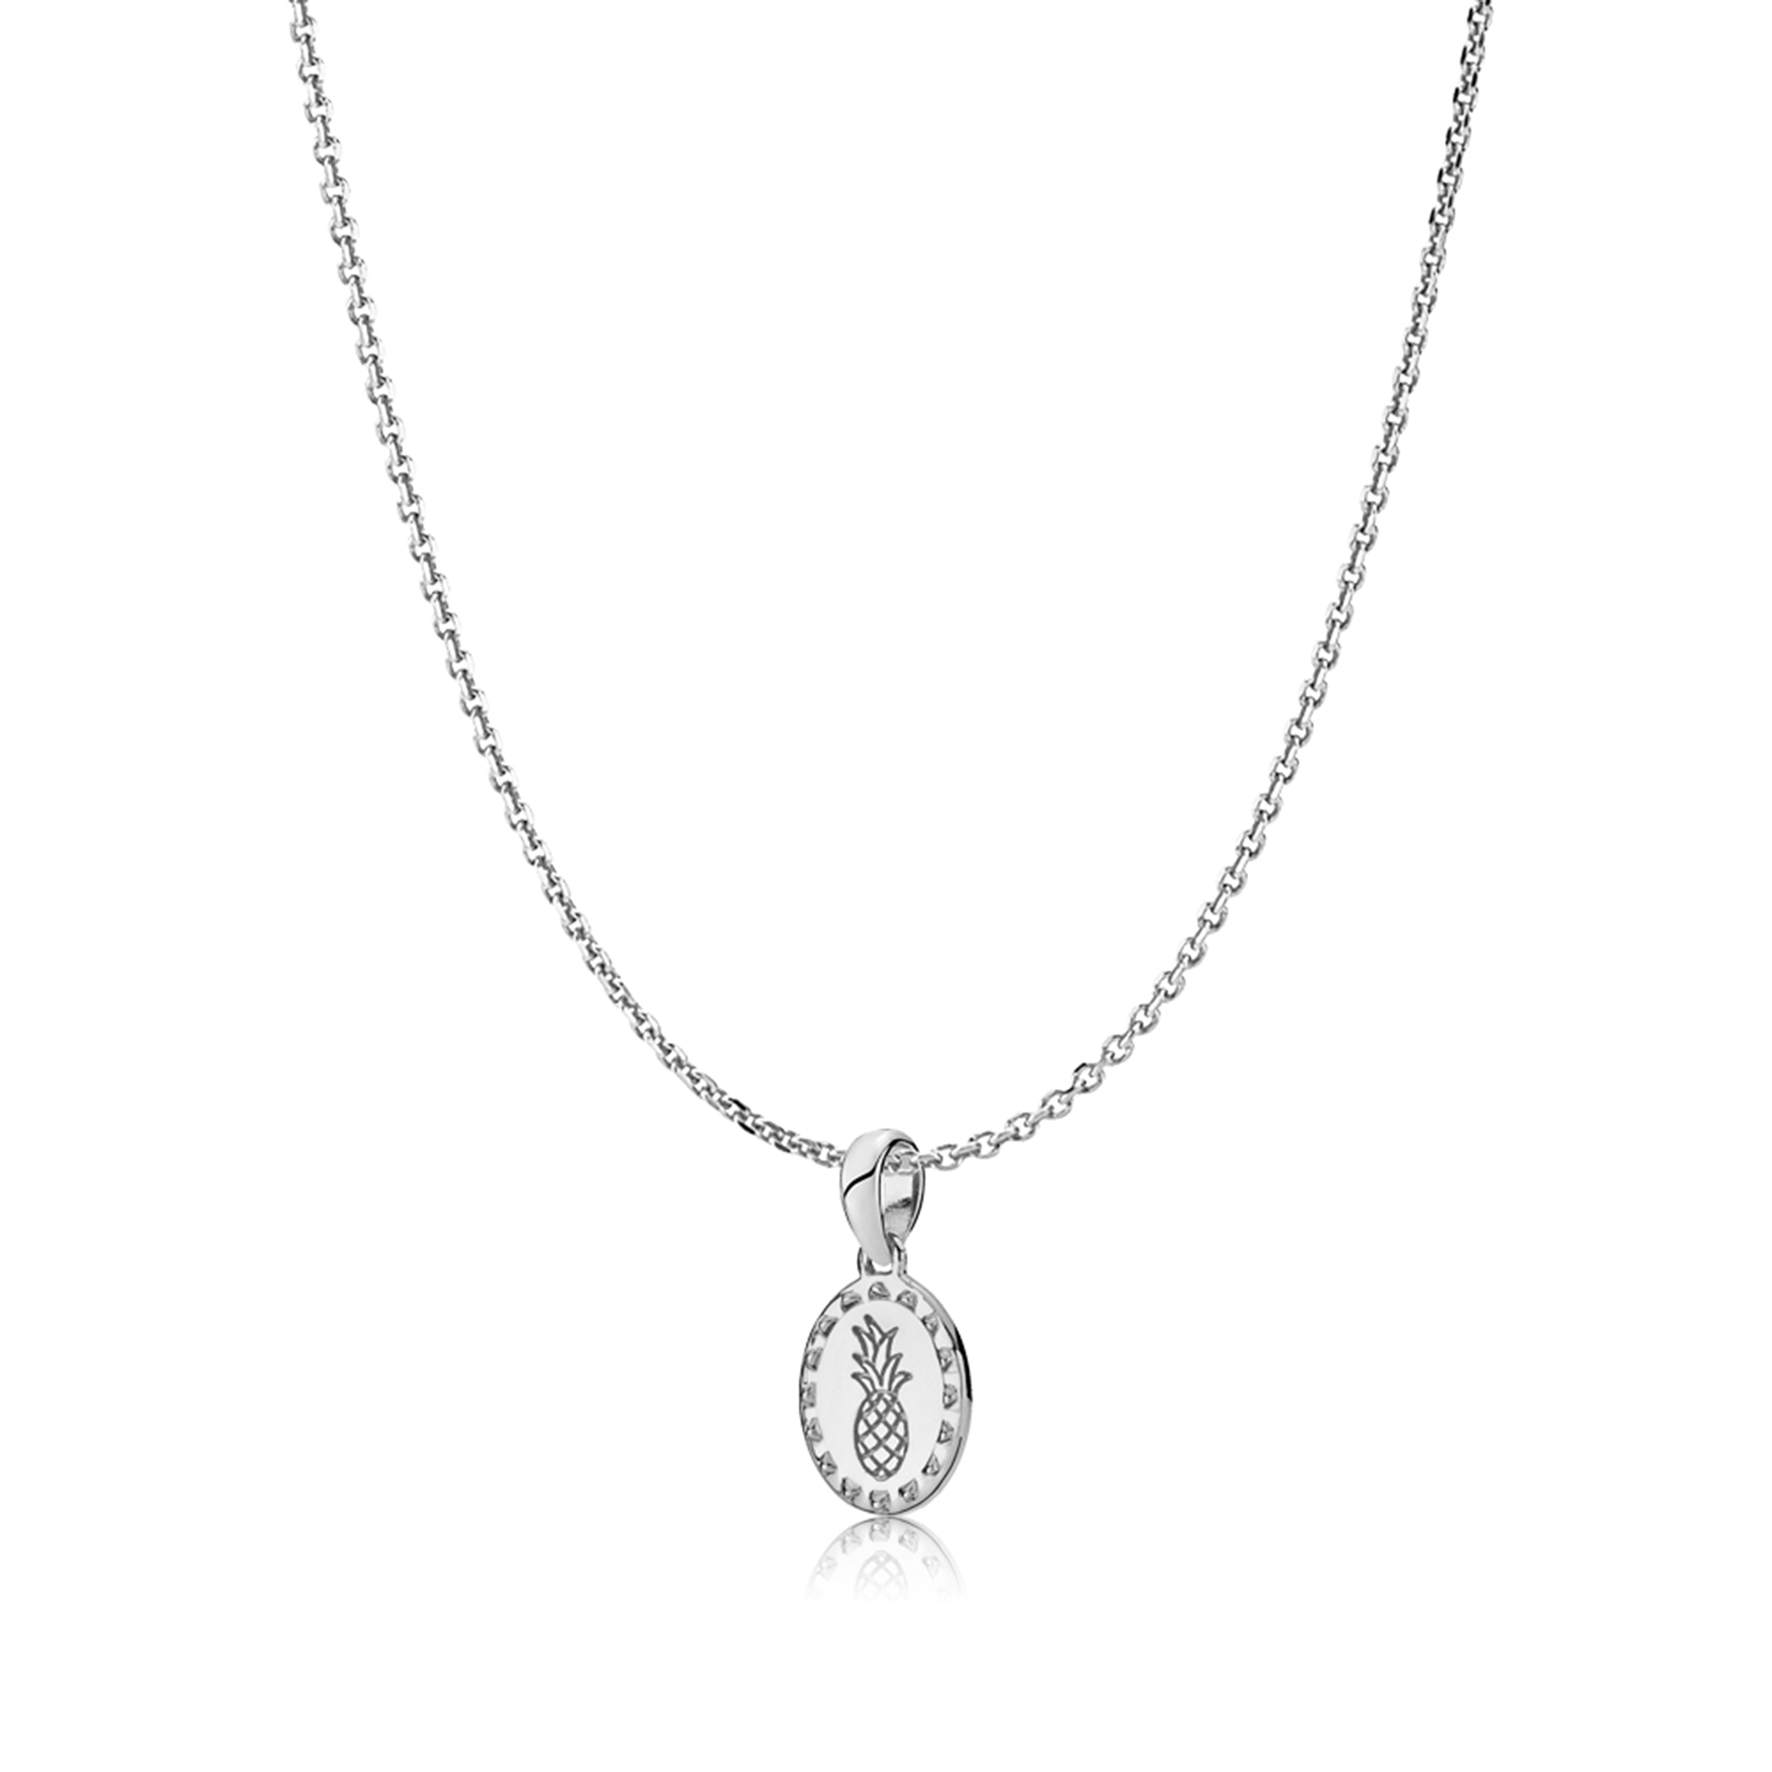 Anna By Sistie Round Pendant Necklace von Sistie in Silber Sterling 925